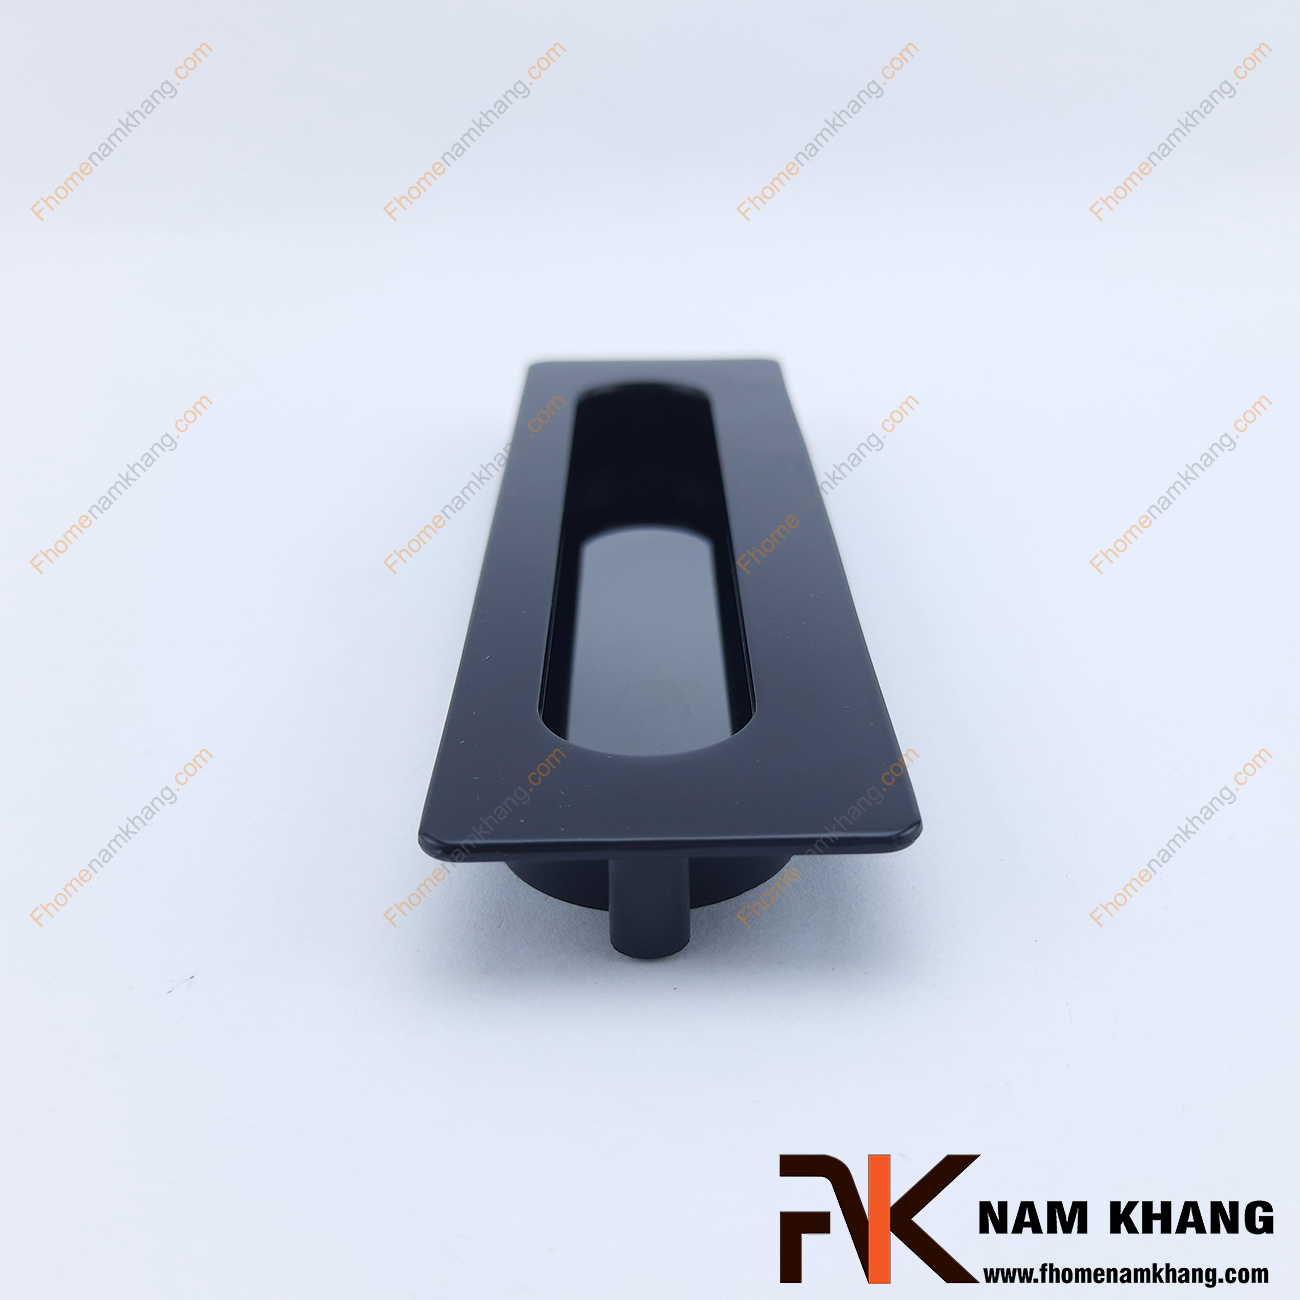 Tay nắm âm tủ dạng trơn màu đen mờ NK145-D là loại tay nắm chuyên dùng cho các loại tủ đặt ở những nơi có không gian hạn chế hoặc dùng để nâng cao tính thẫm mỹ của sản phẩm.